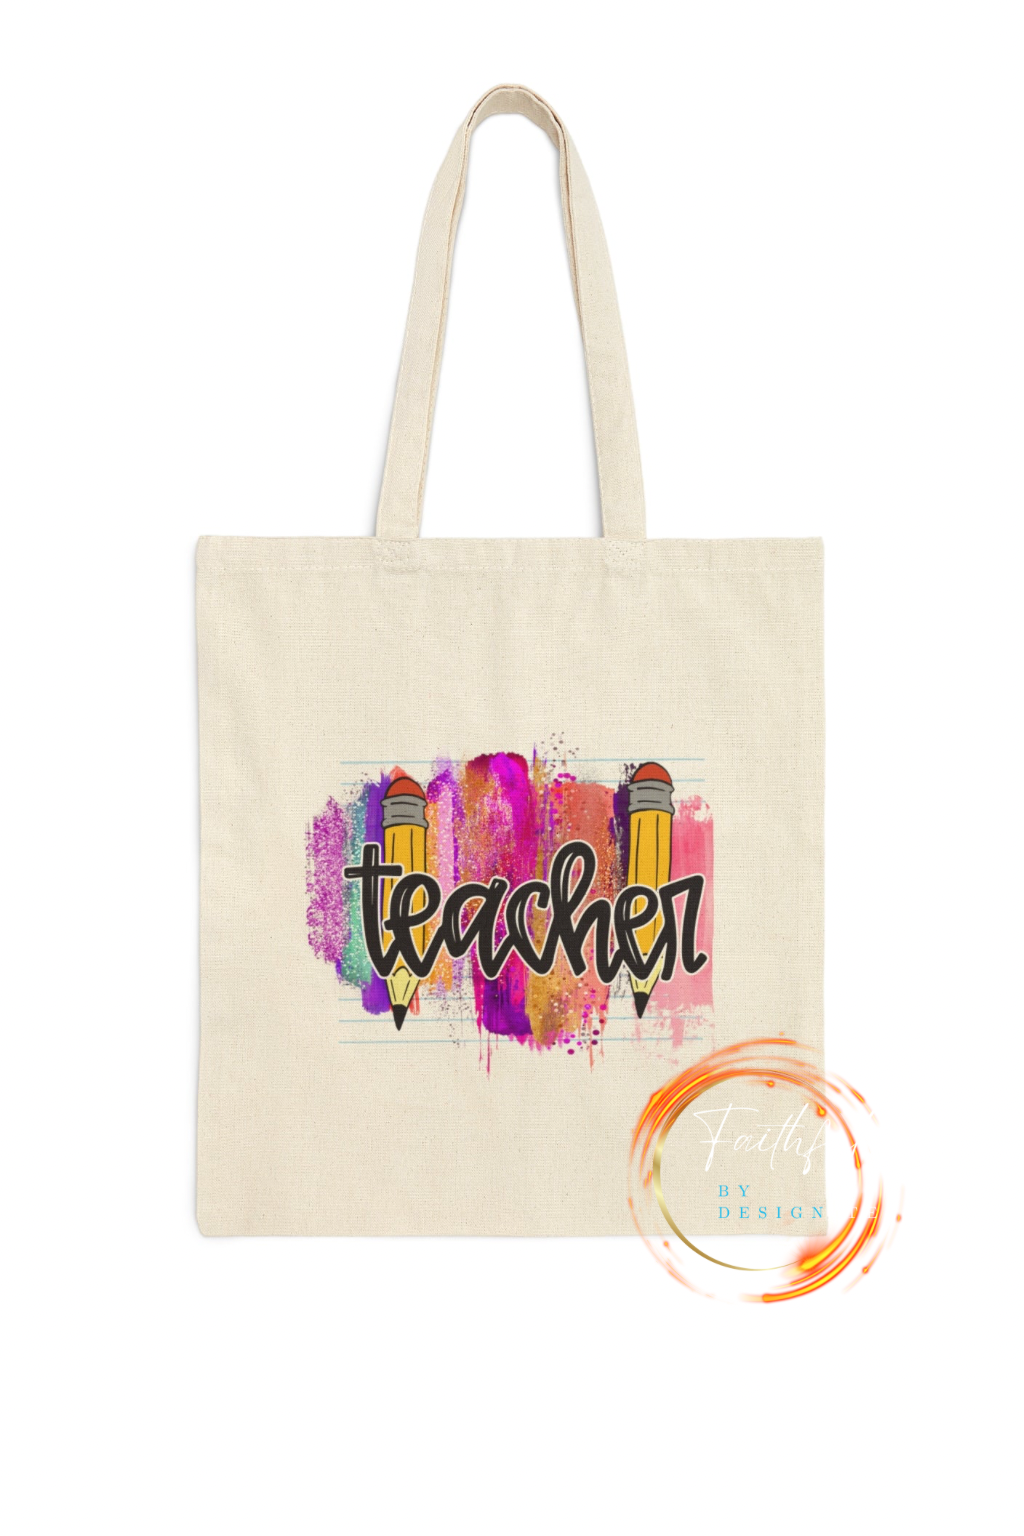 Teacher Cotton Canvas Tote Bag